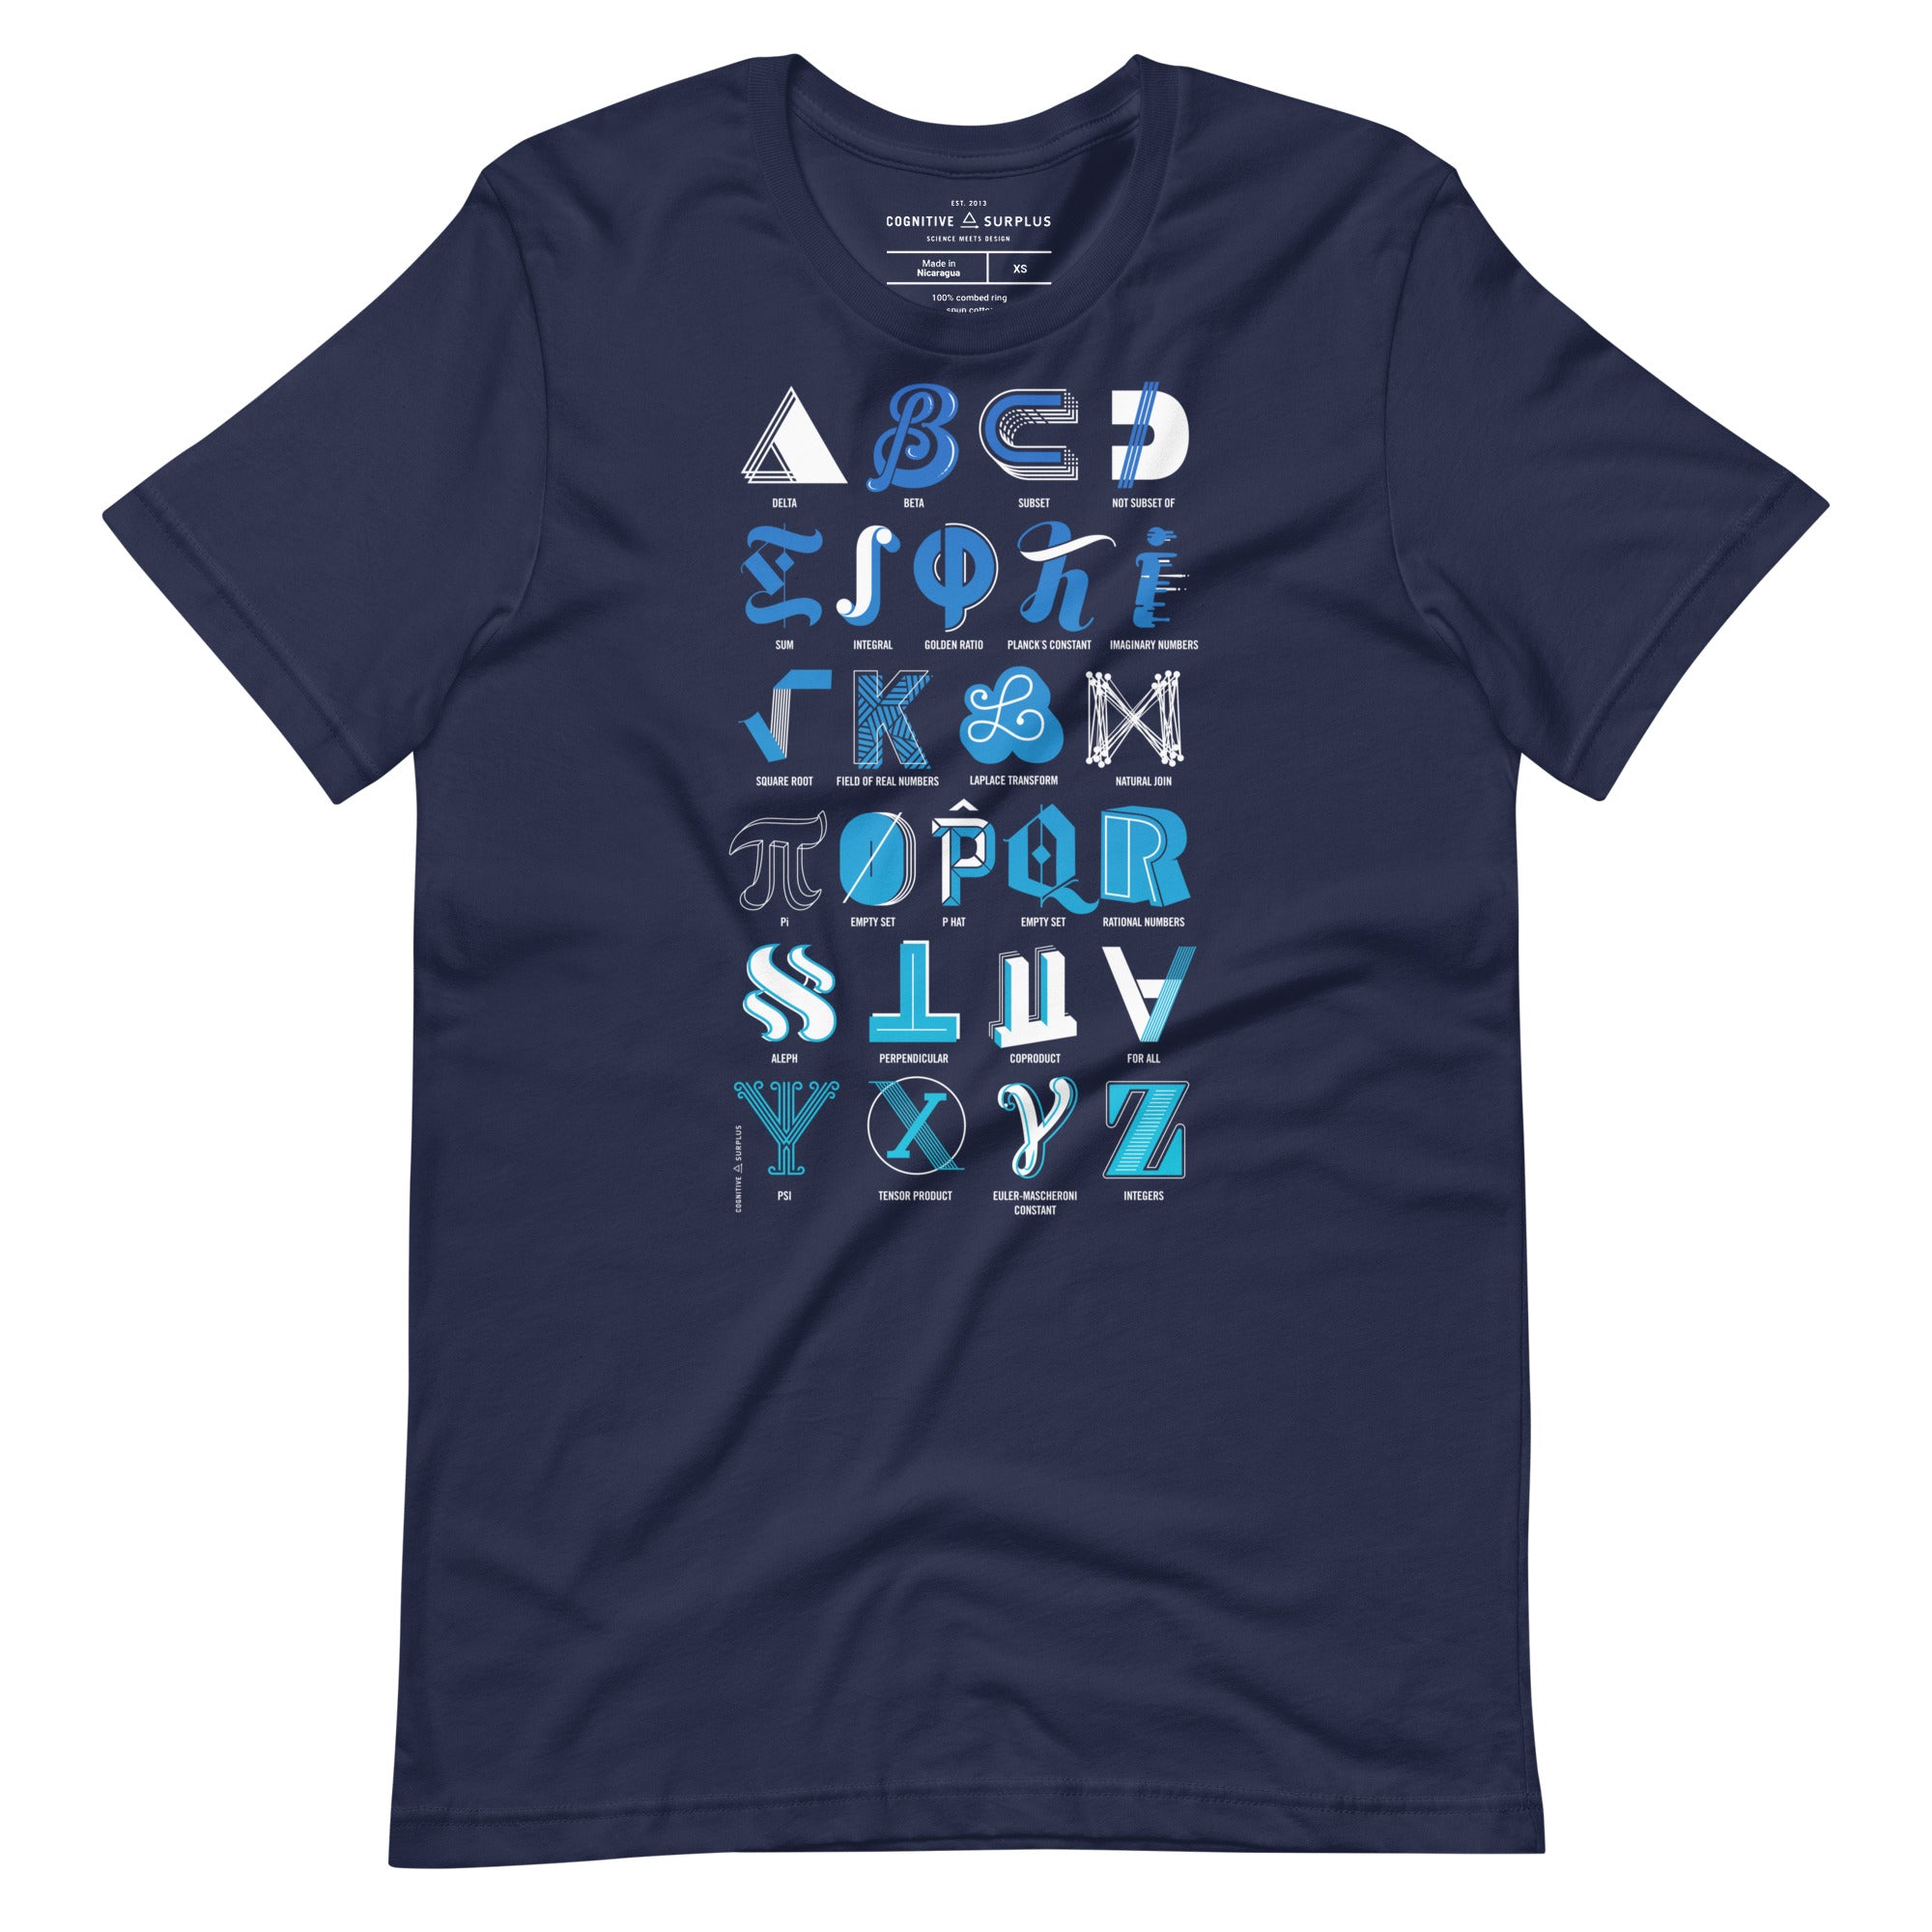 unisex-staple-t-shirt-navy-front-654a7091493d1.jpg